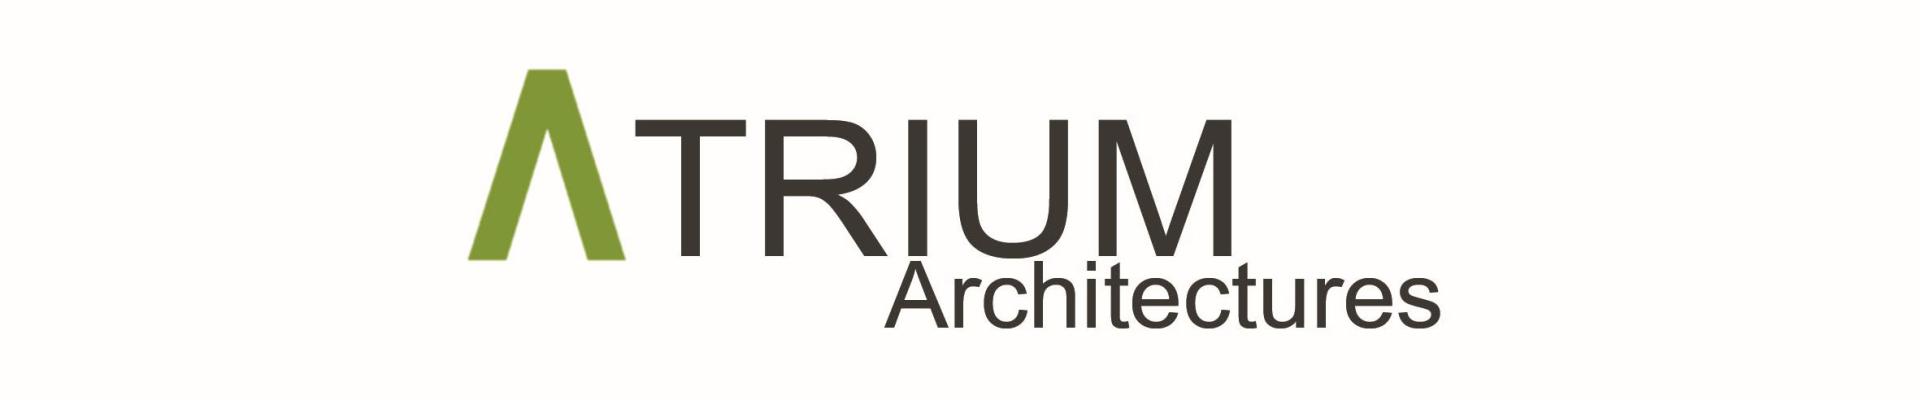 logo_atrium45.jpg